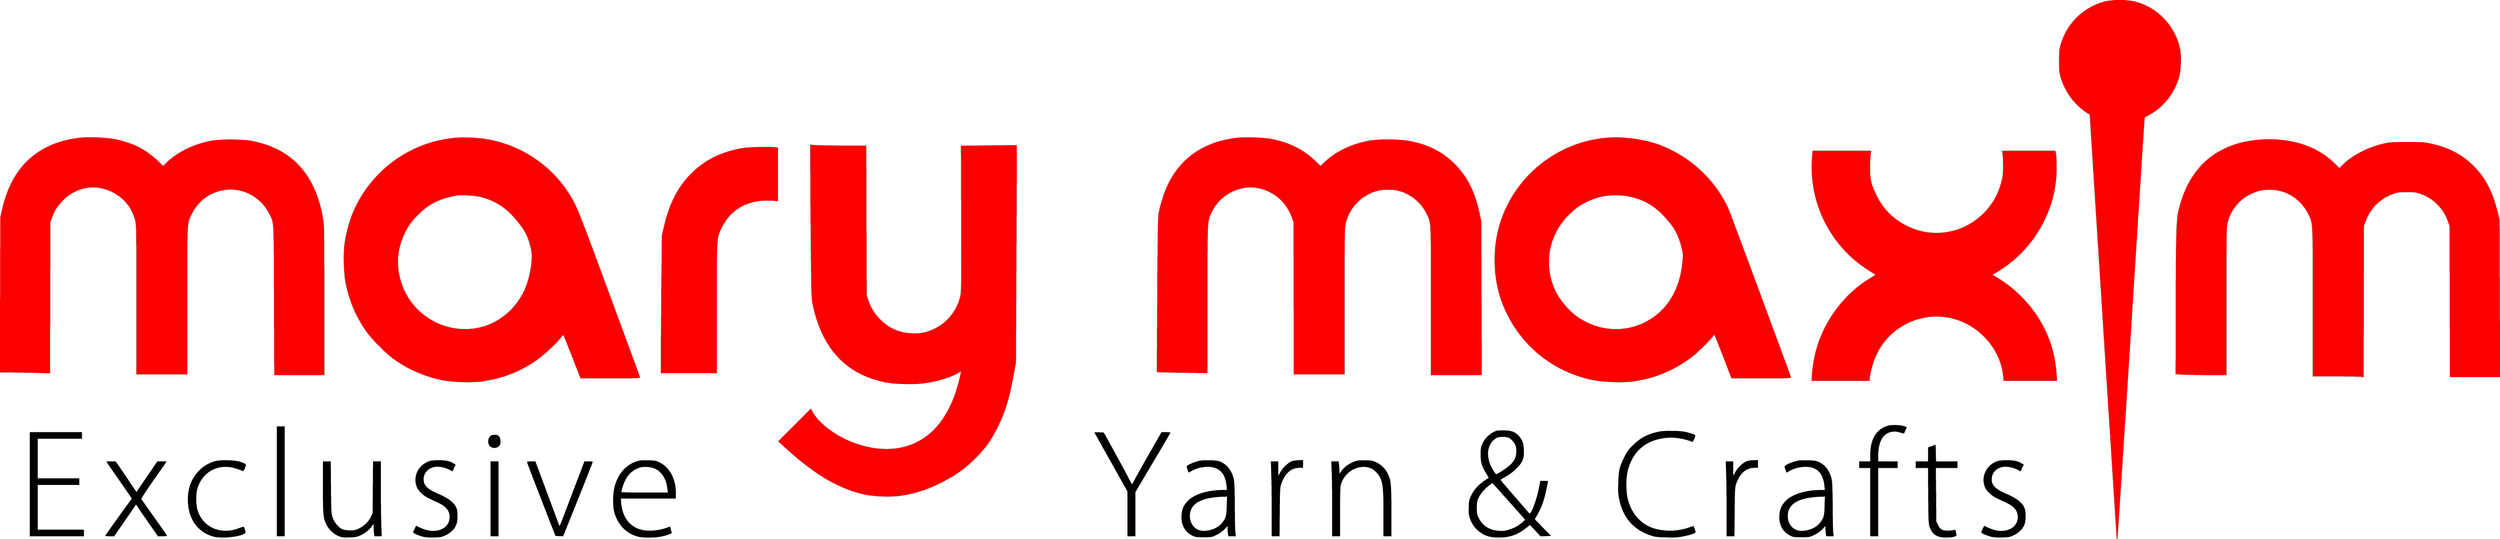 New Mary Maxim Logo.png